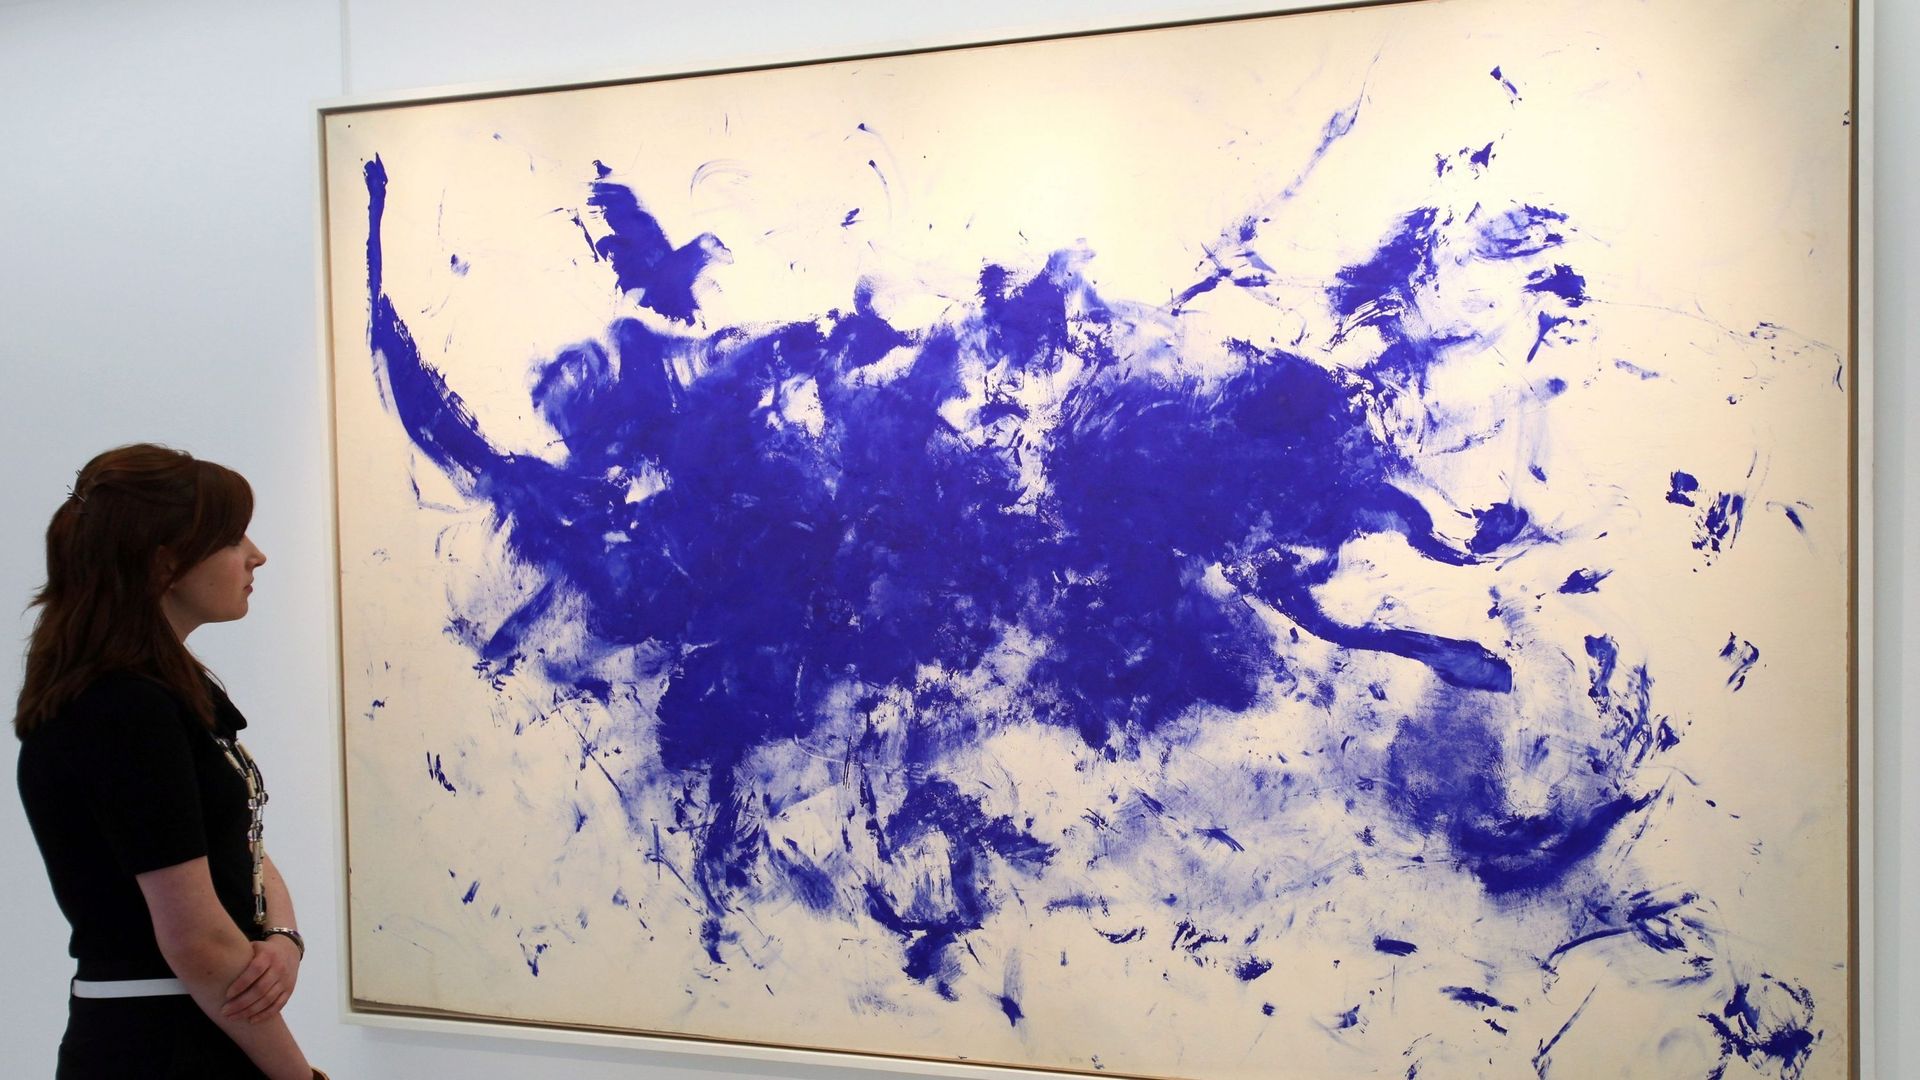 Un employé de Christie’s regarde le chef-d’œuvre de l’artiste français Yves Klein "ANT 93, Le Buffle" (1960-1961), à la maison de vente aux enchères Christie’s à Londres, en Grande-Bretagne, le 4 mars 2010. Le tableau de l’artiste français est proposé pou